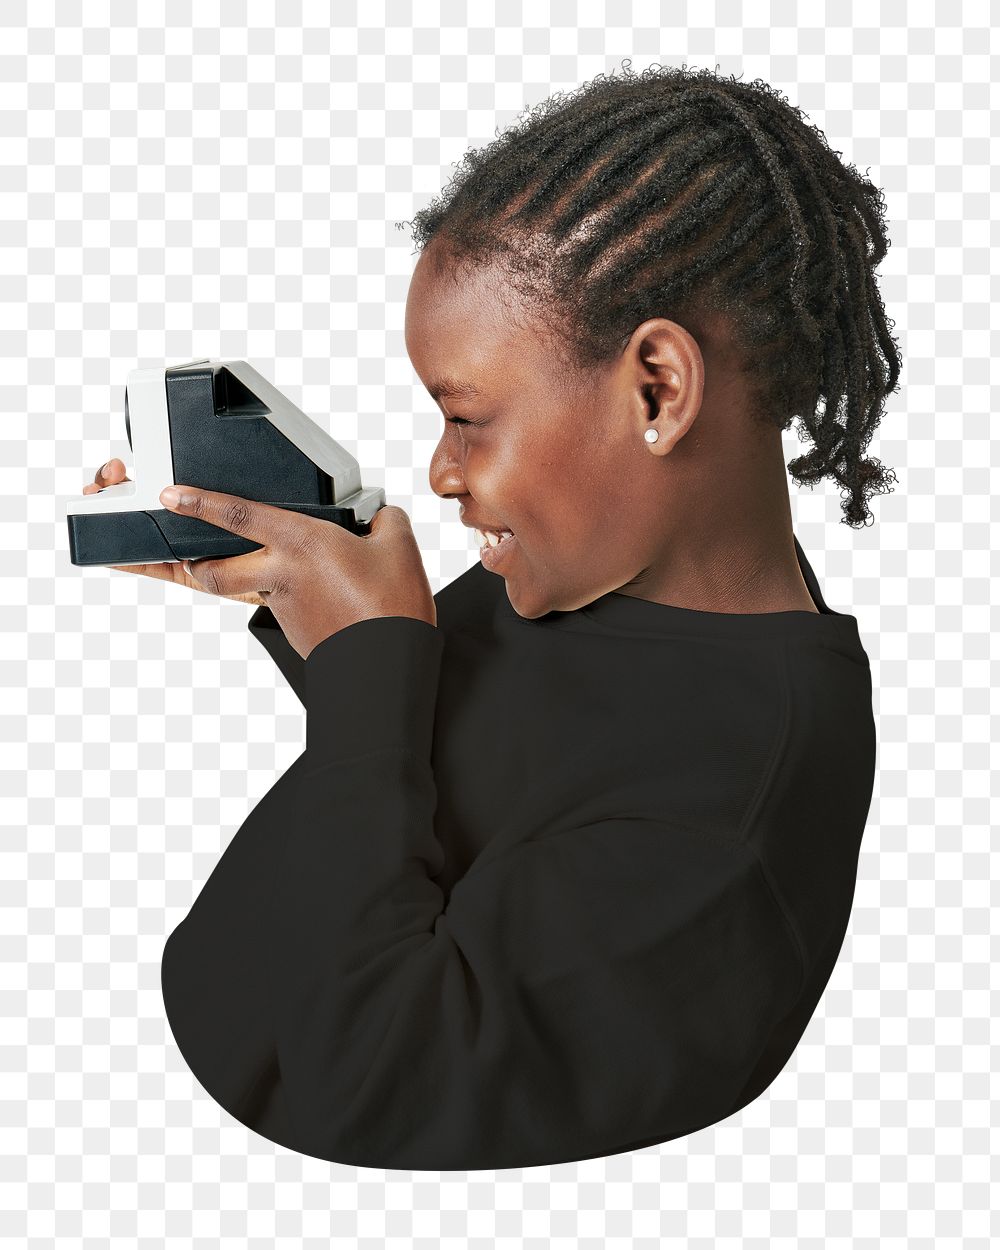 Png black kid using vintage camera sticker, transparent background